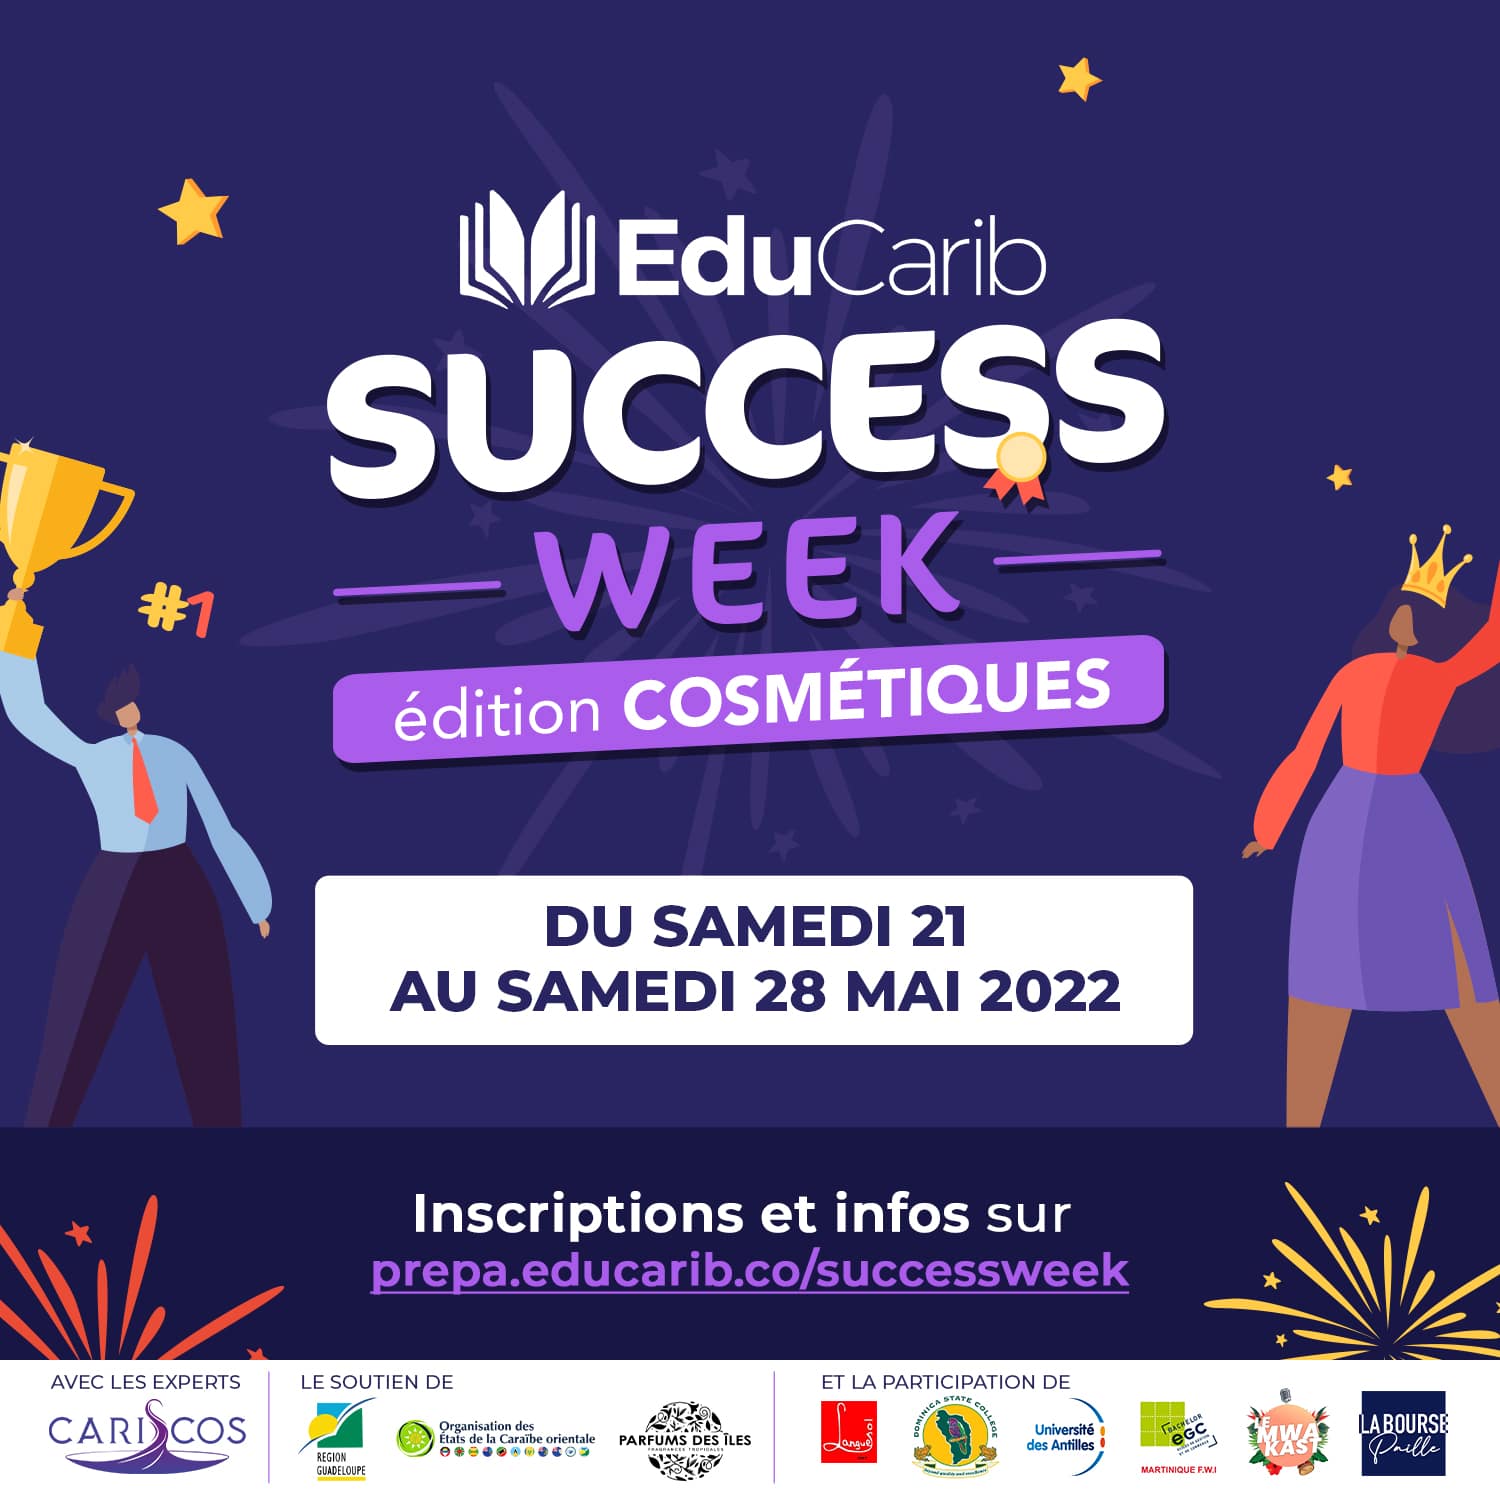 success-week-educarib-edition-cosmetique-antille-caraibe